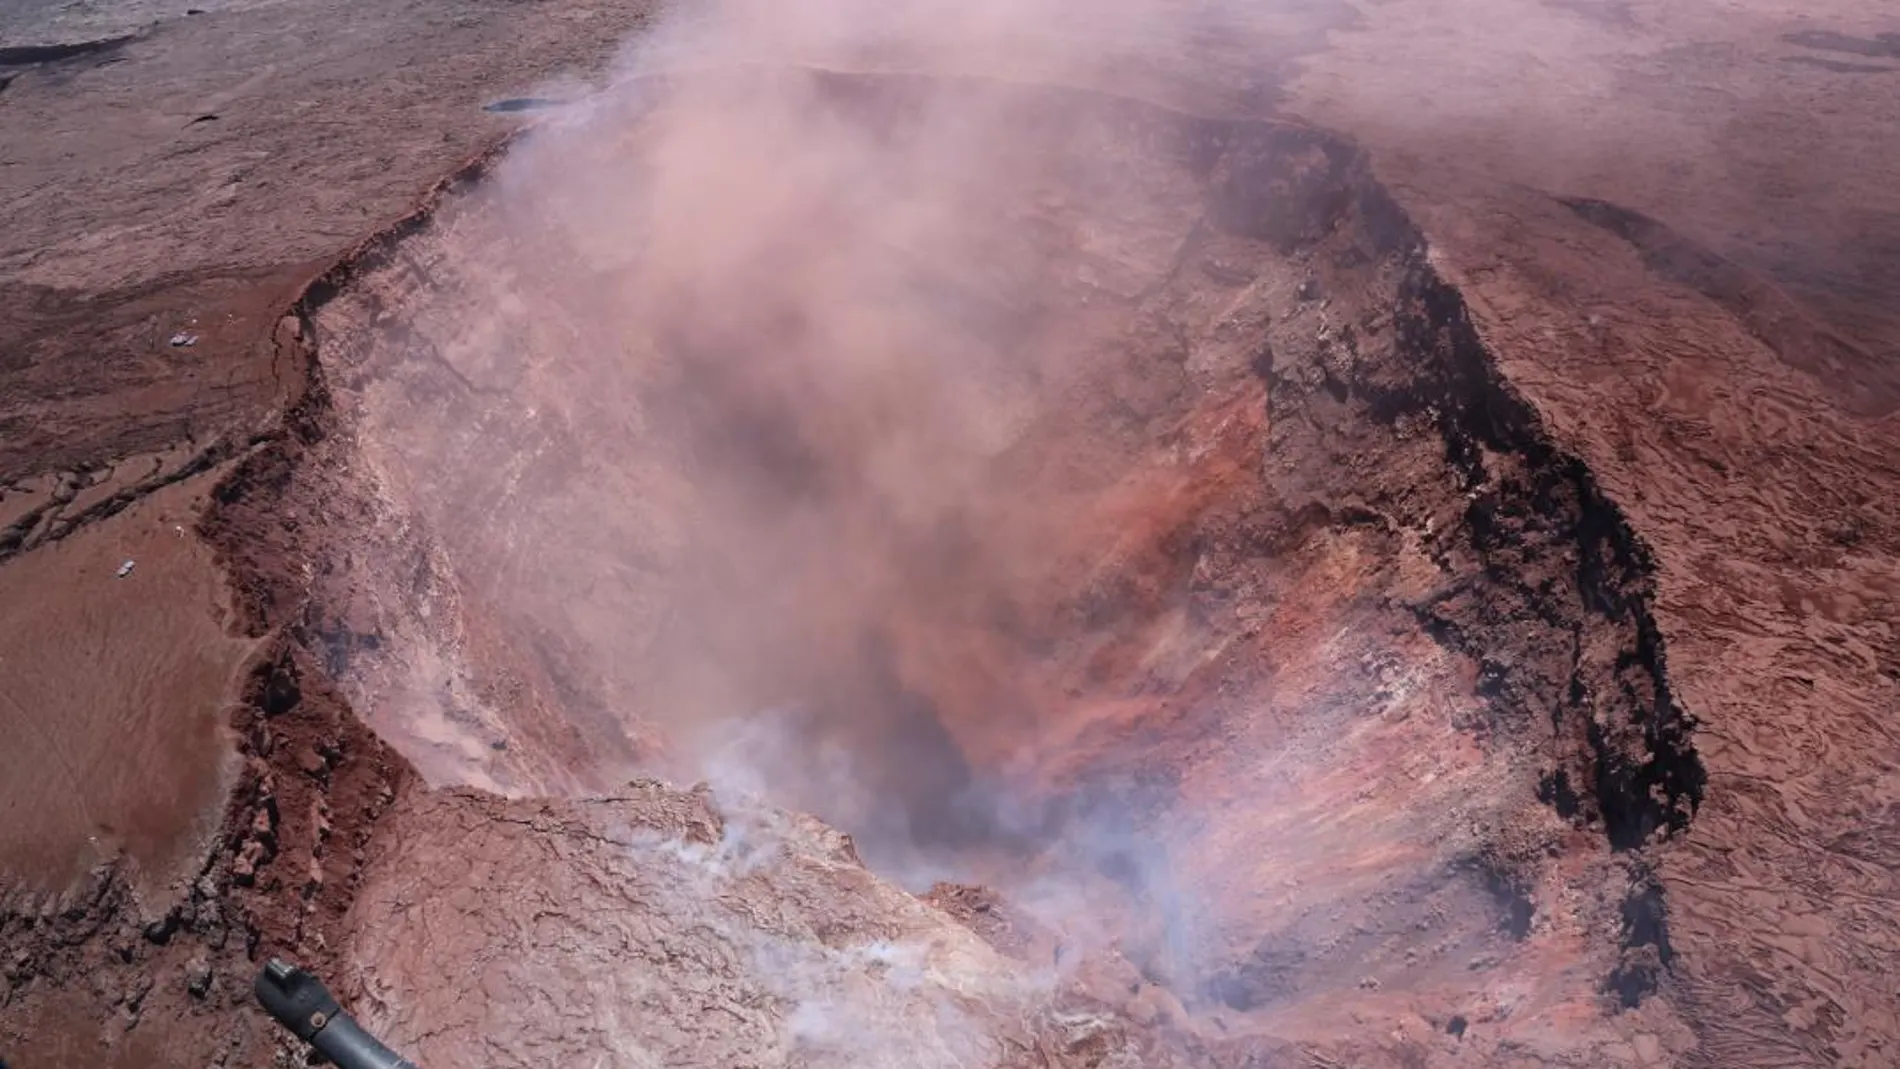 Vista del cráter derrumbado de Pu'u 'O'o del volcán Kilauea cerca de Pahoa, Hawai / Foto: Efe